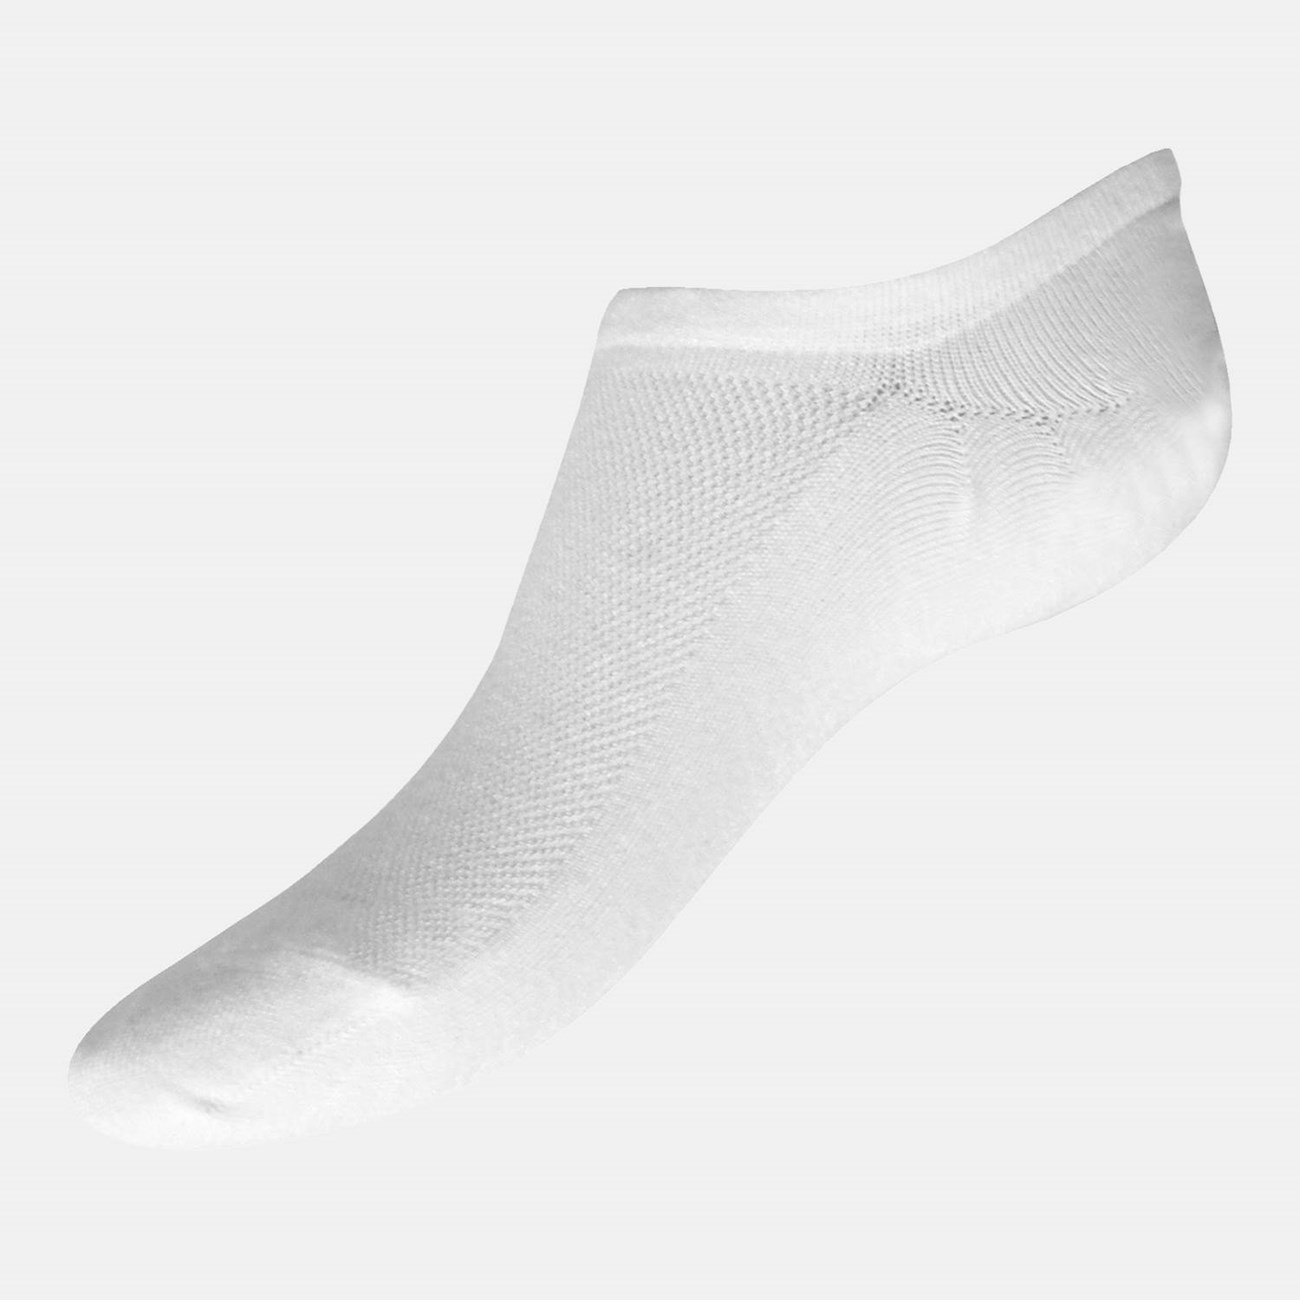  Γυναικείες Κάλτσες Sosoni Bamboo  W335 - The Athlete's Foot